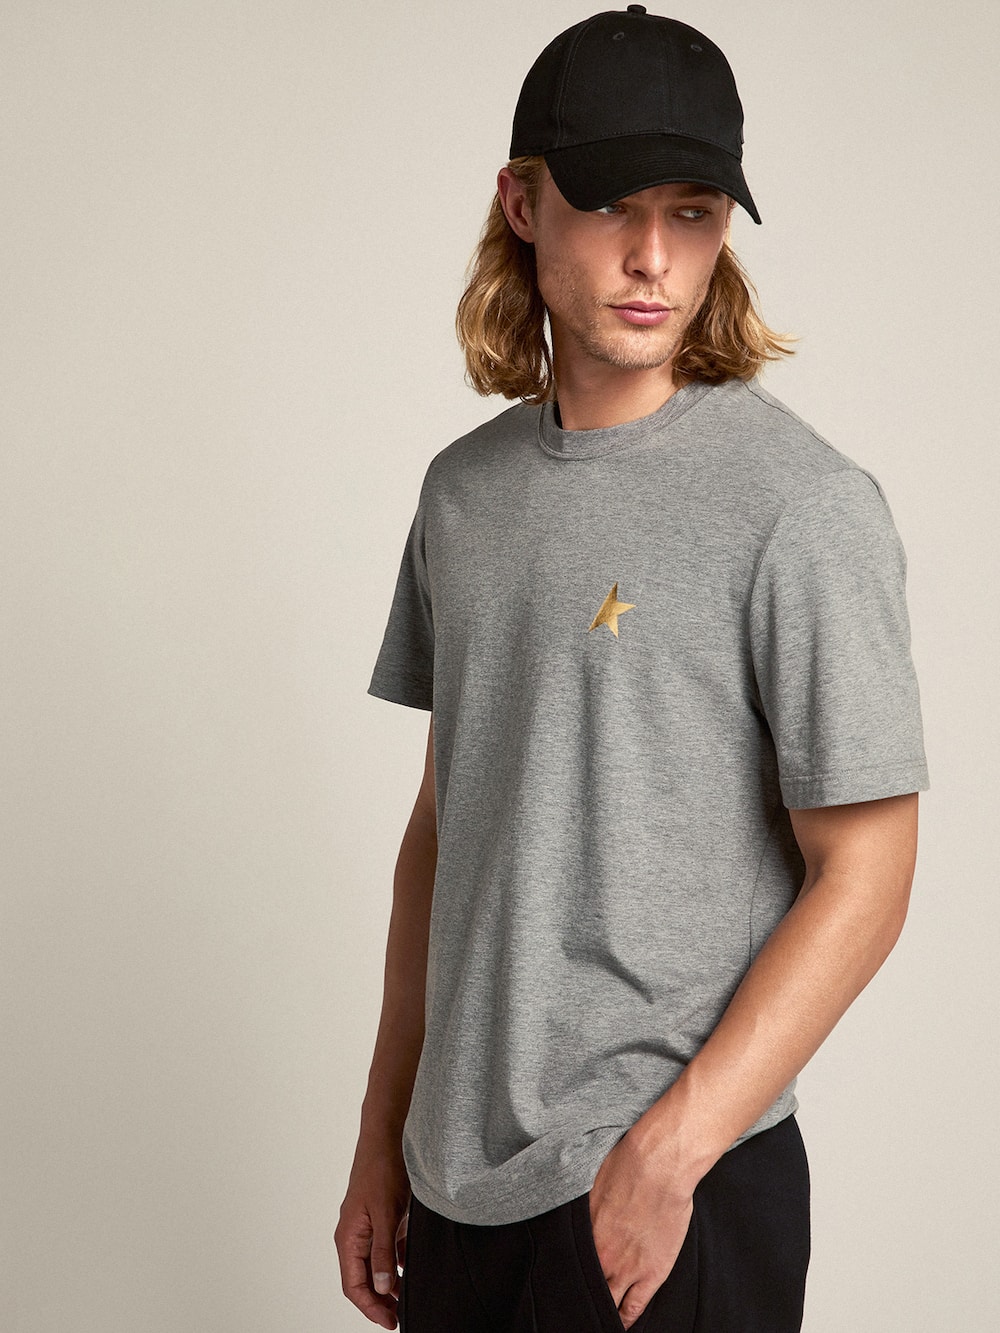 Golden Goose - T-shirt da uomo color grigio mélange con stella oro sul davanti in 